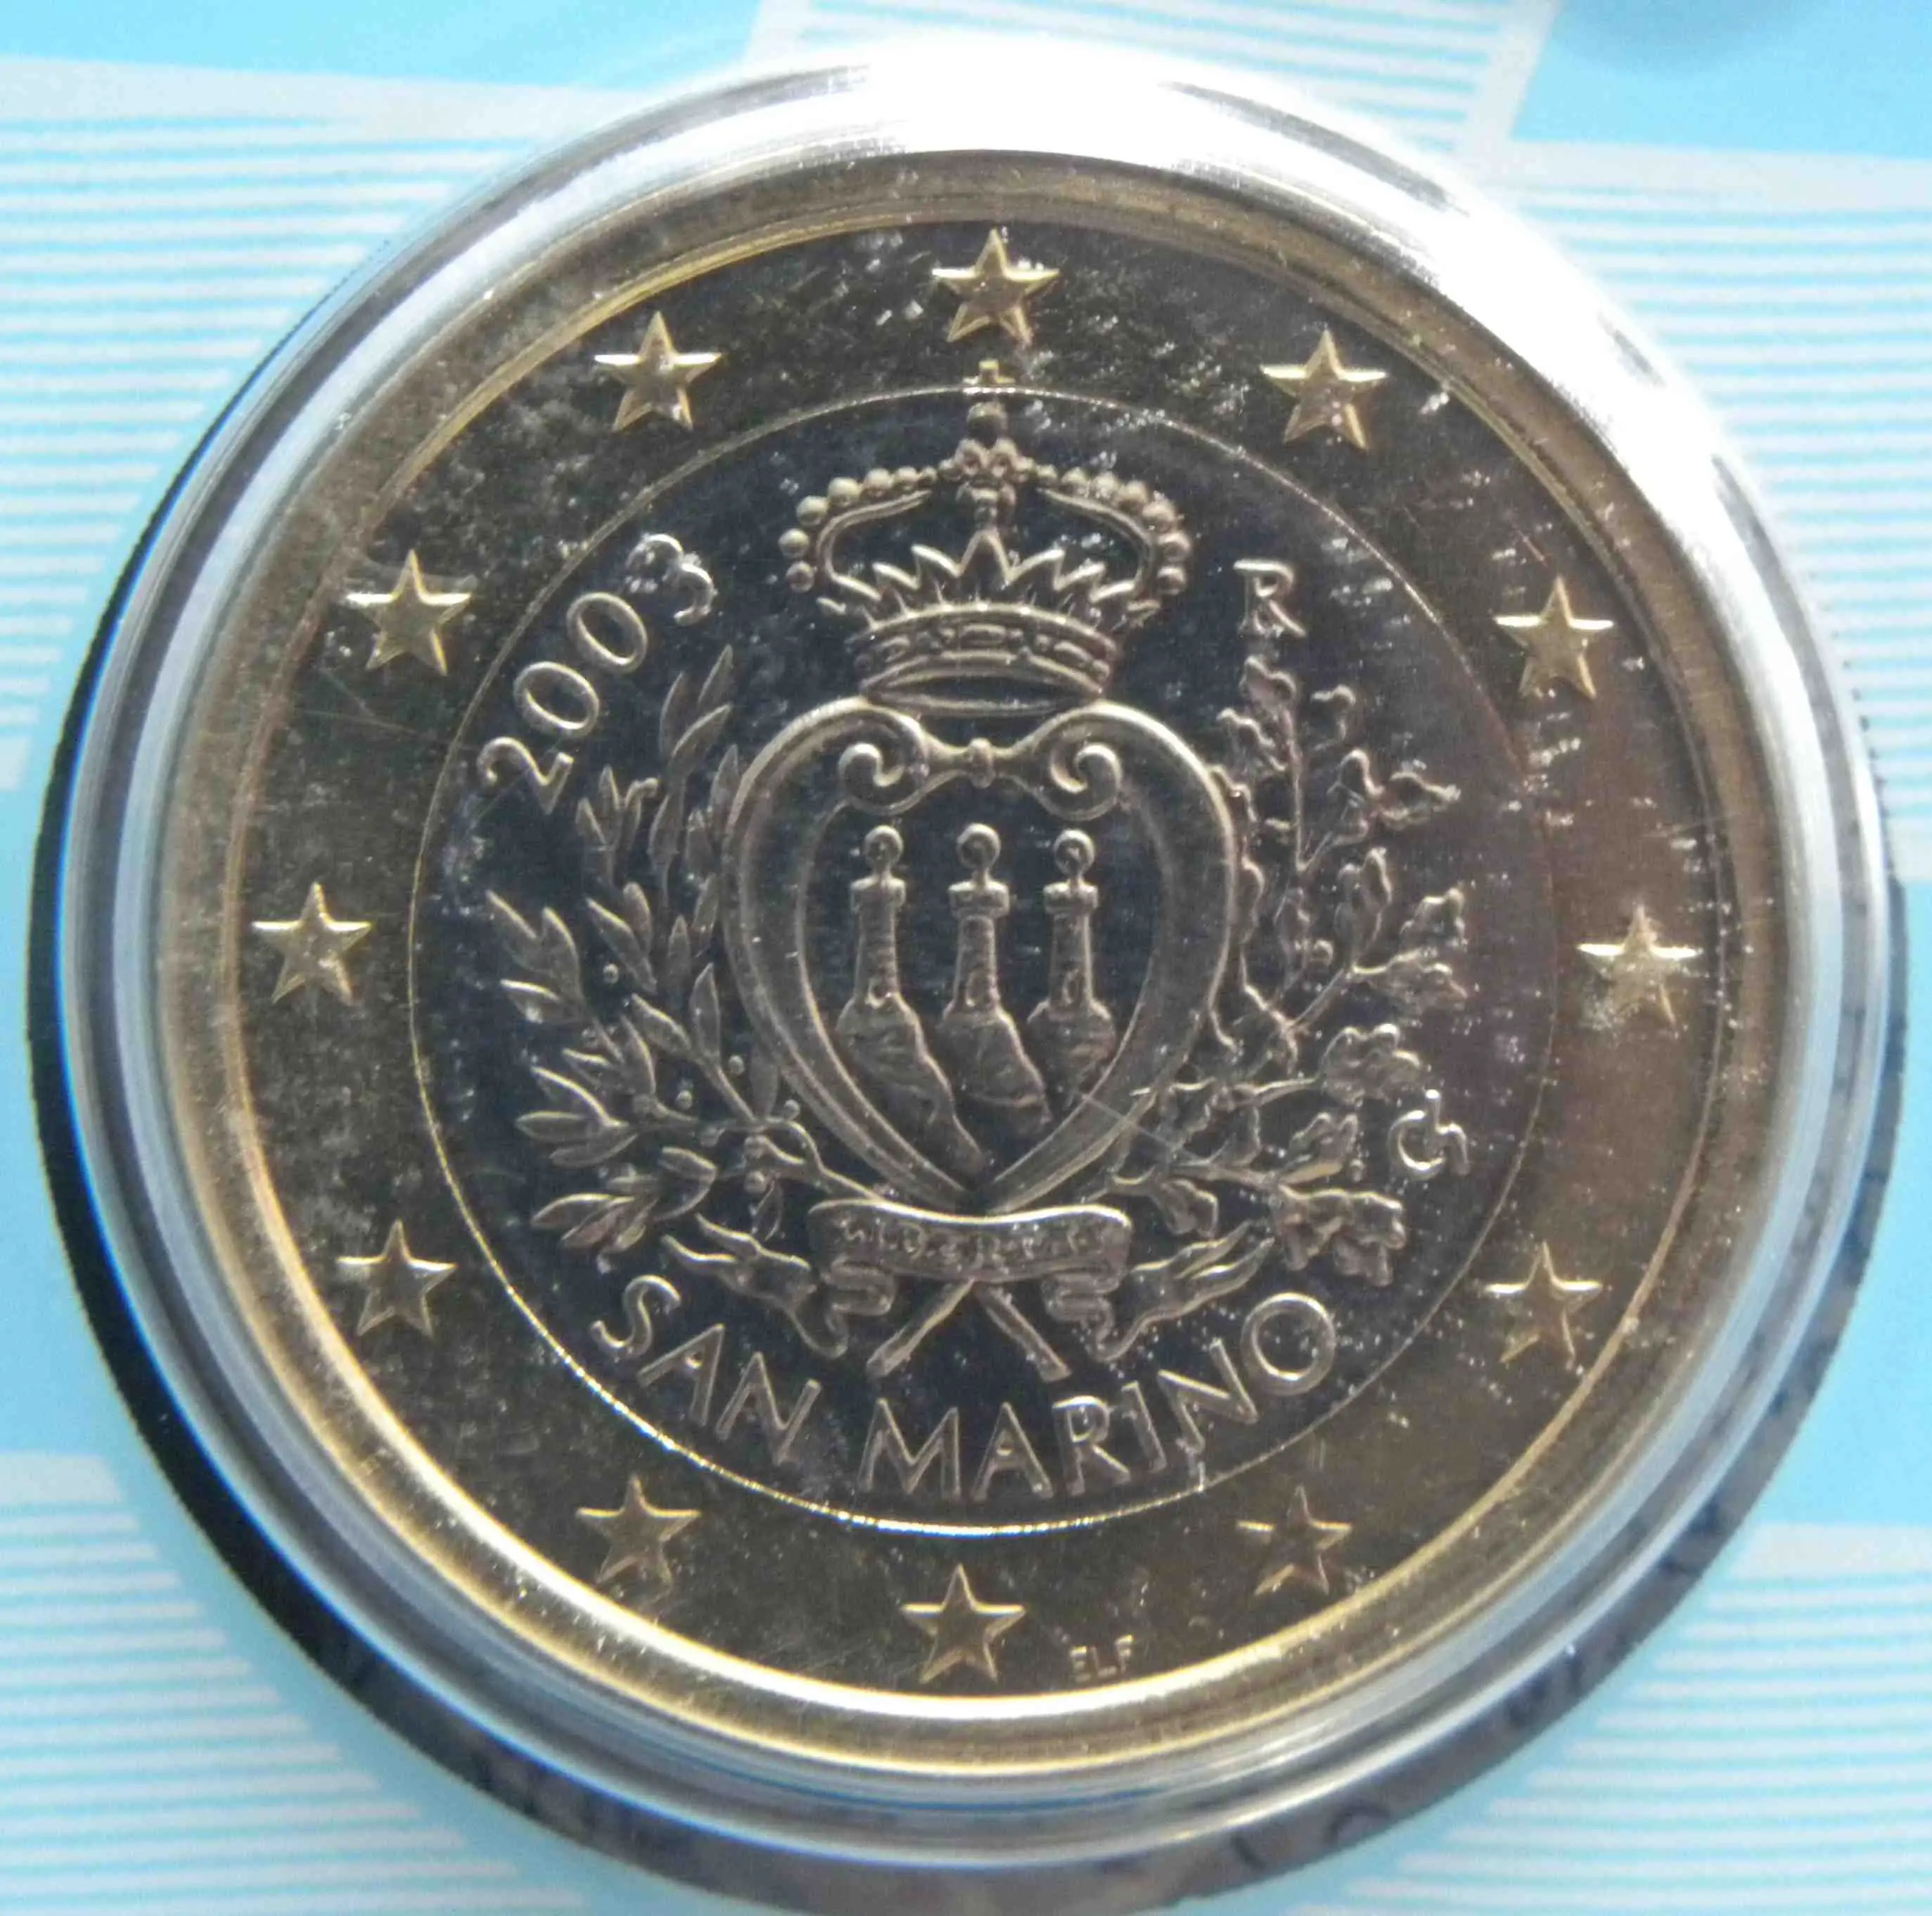 San Marino 1 Euro Münze 2003 - euro-muenzen.tv - Der Online Euromünzen